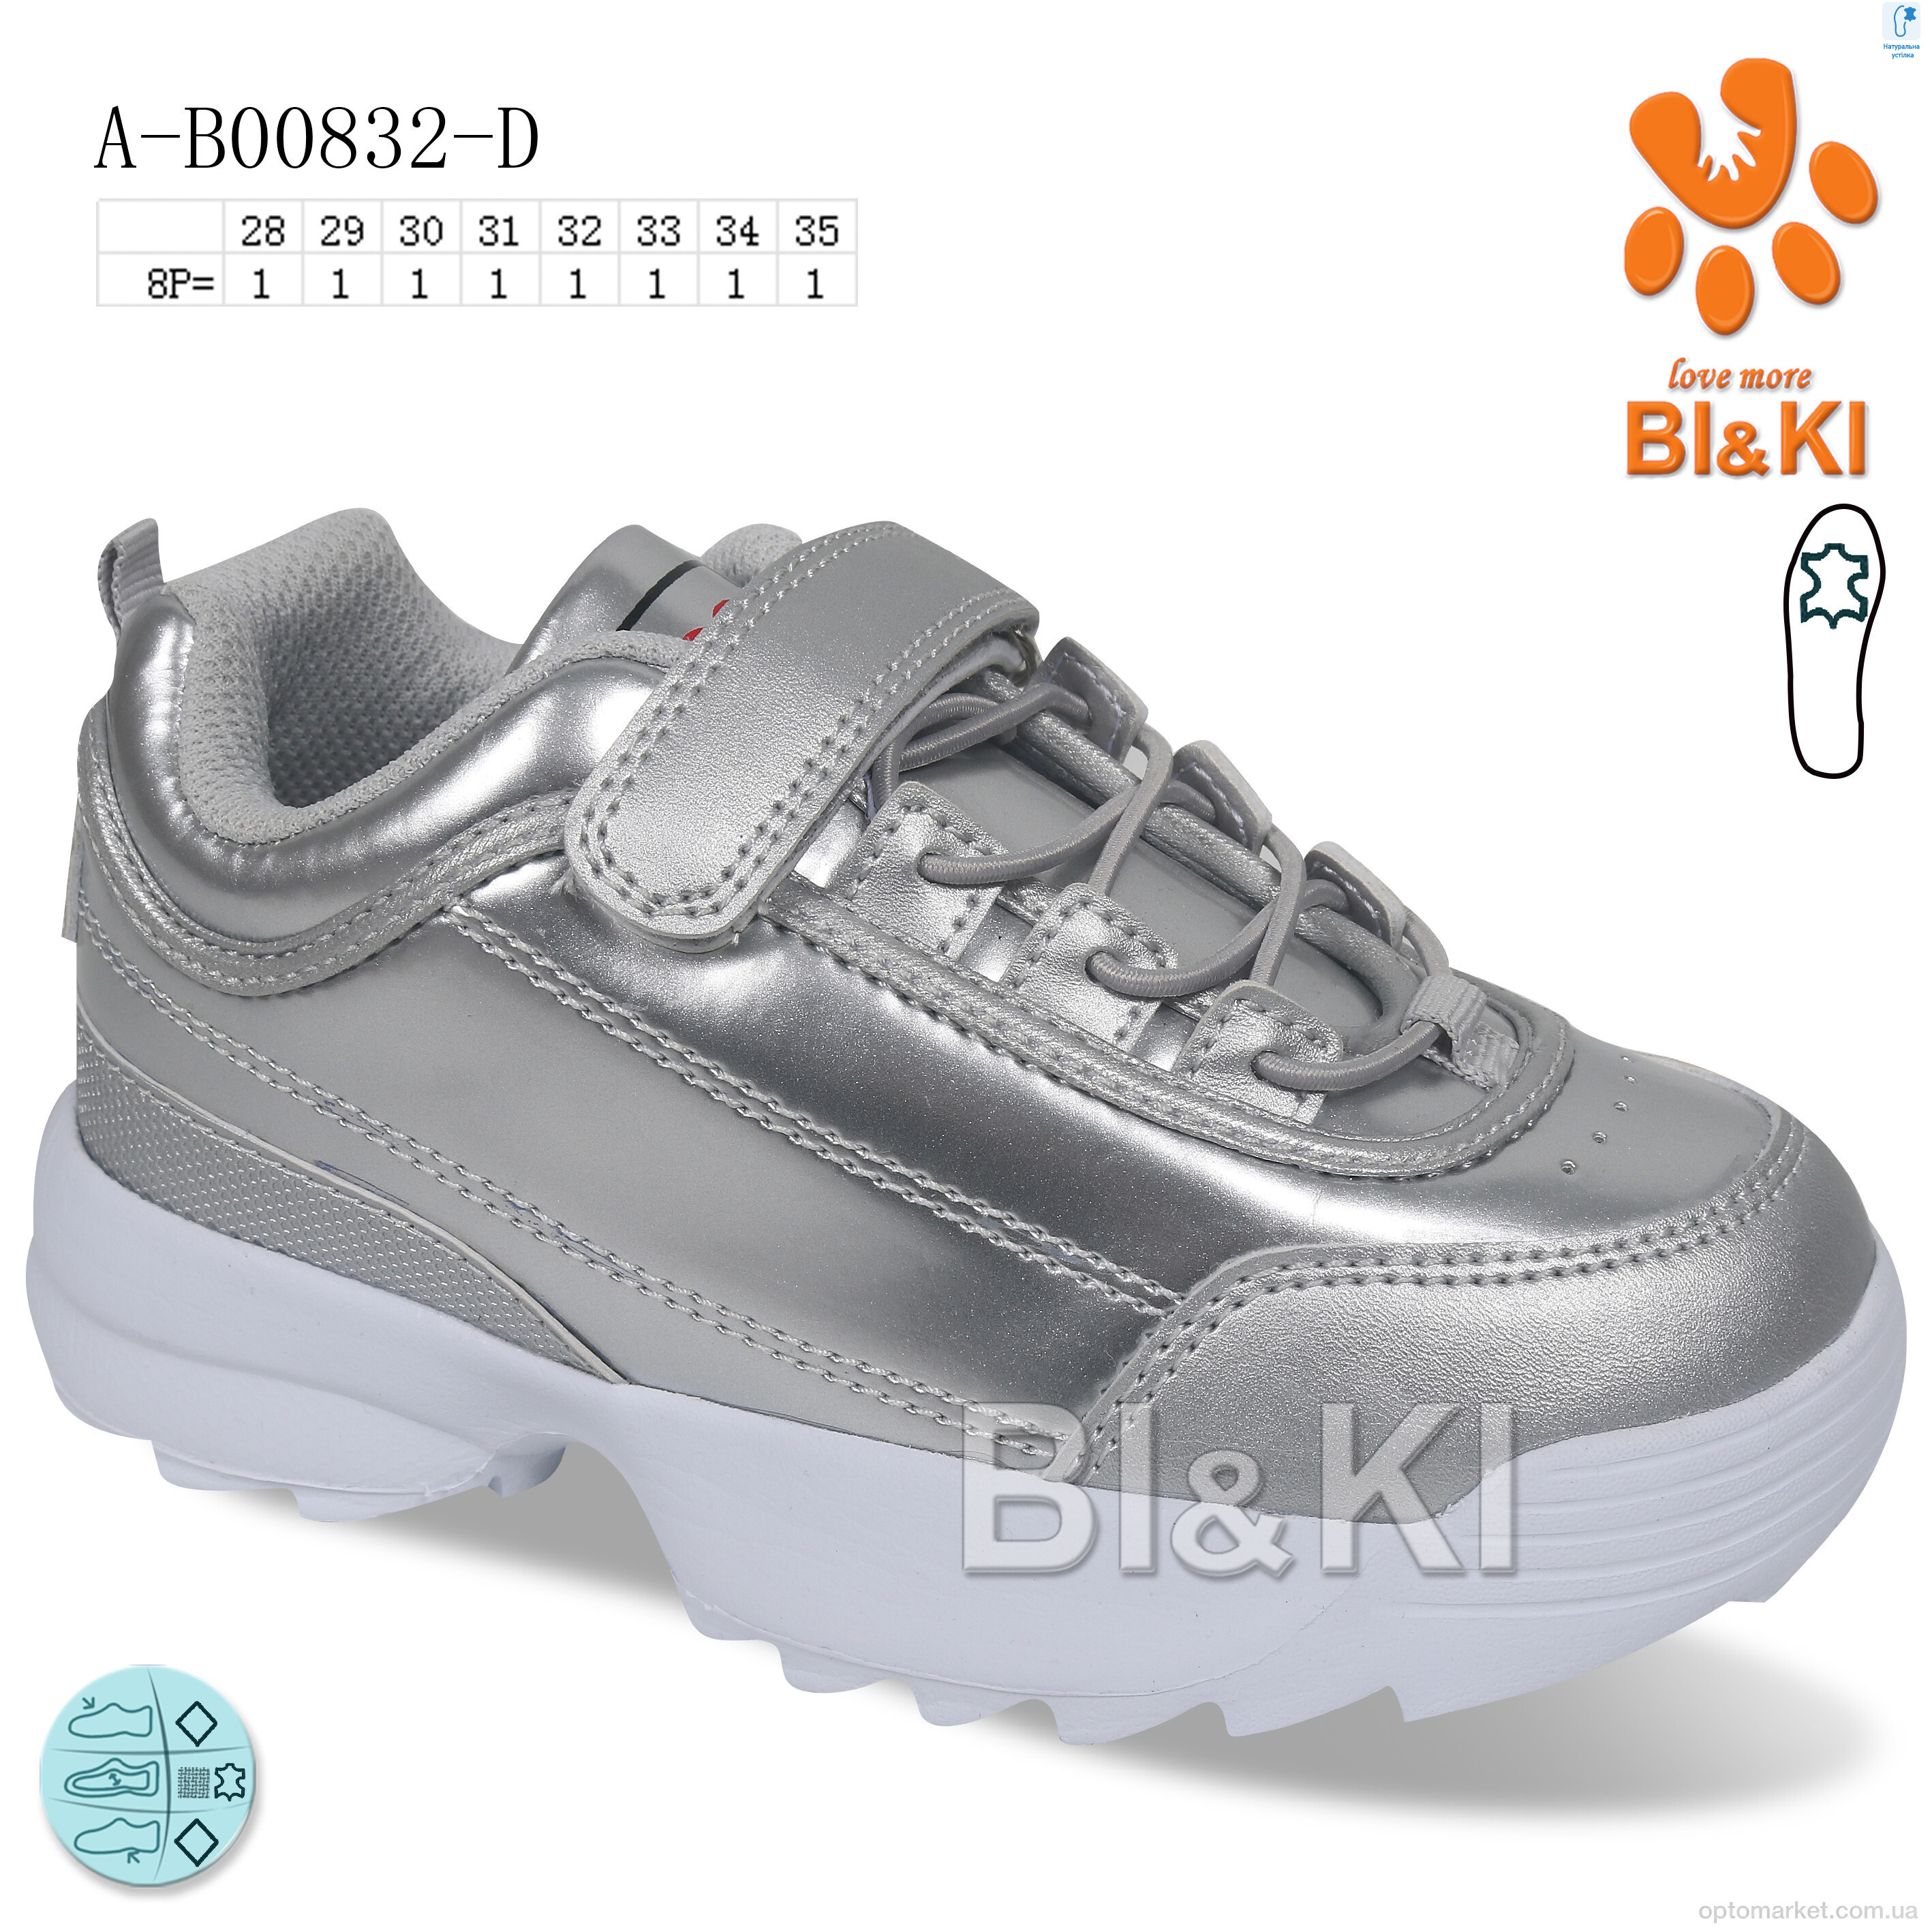 Купить Кросівки дитячі AB00832D BL&KL срібний, фото 1